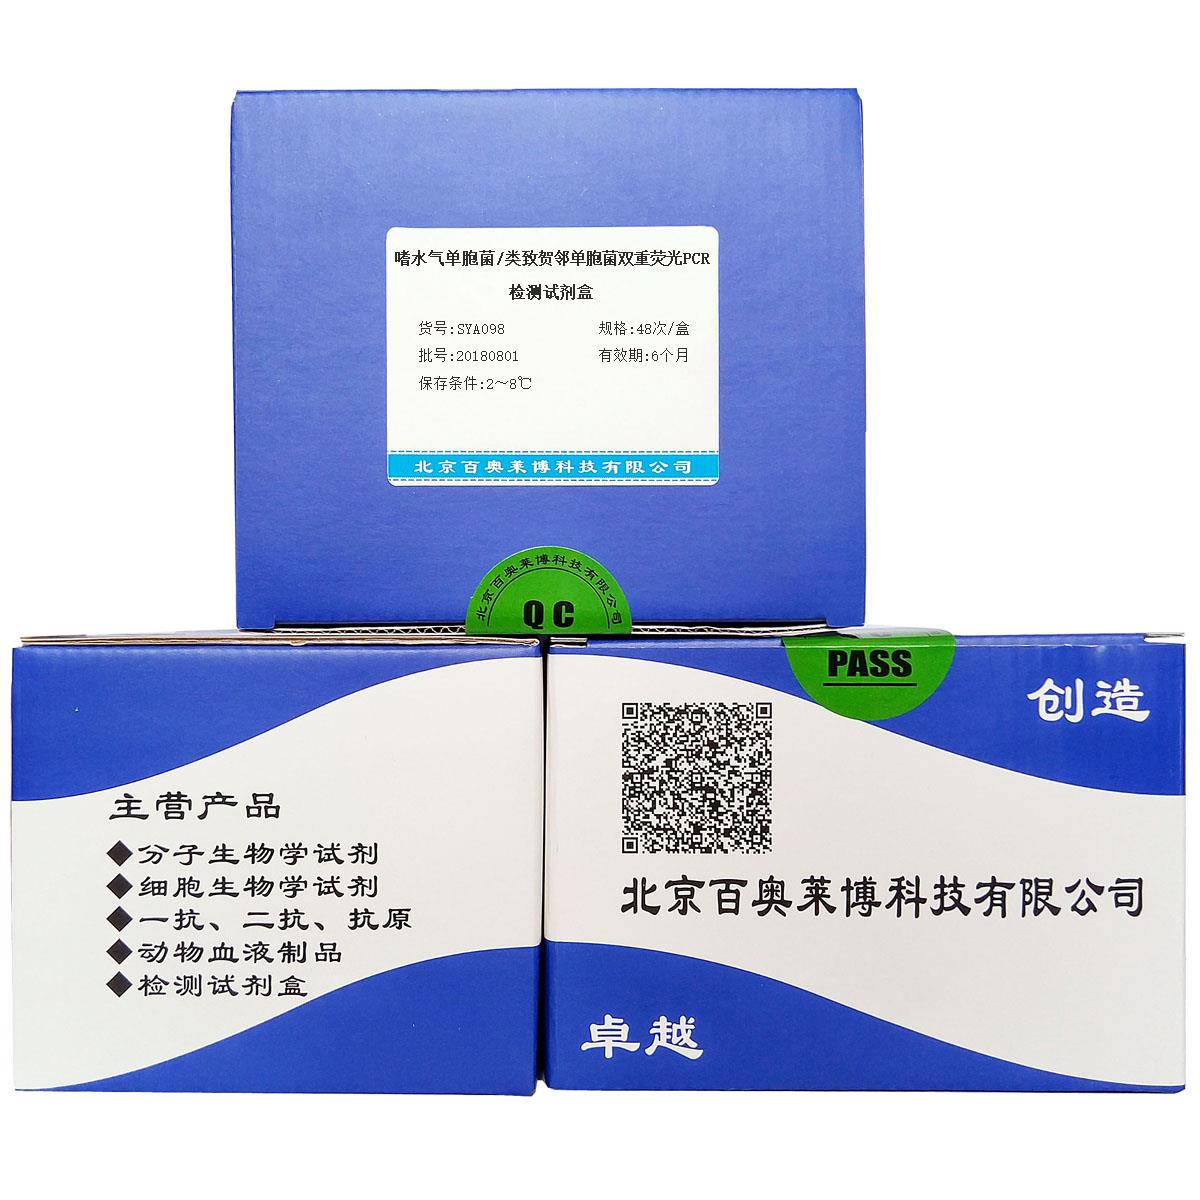 嗜水气单胞菌/类致贺邻单胞菌双重荧光PCR检测试剂盒